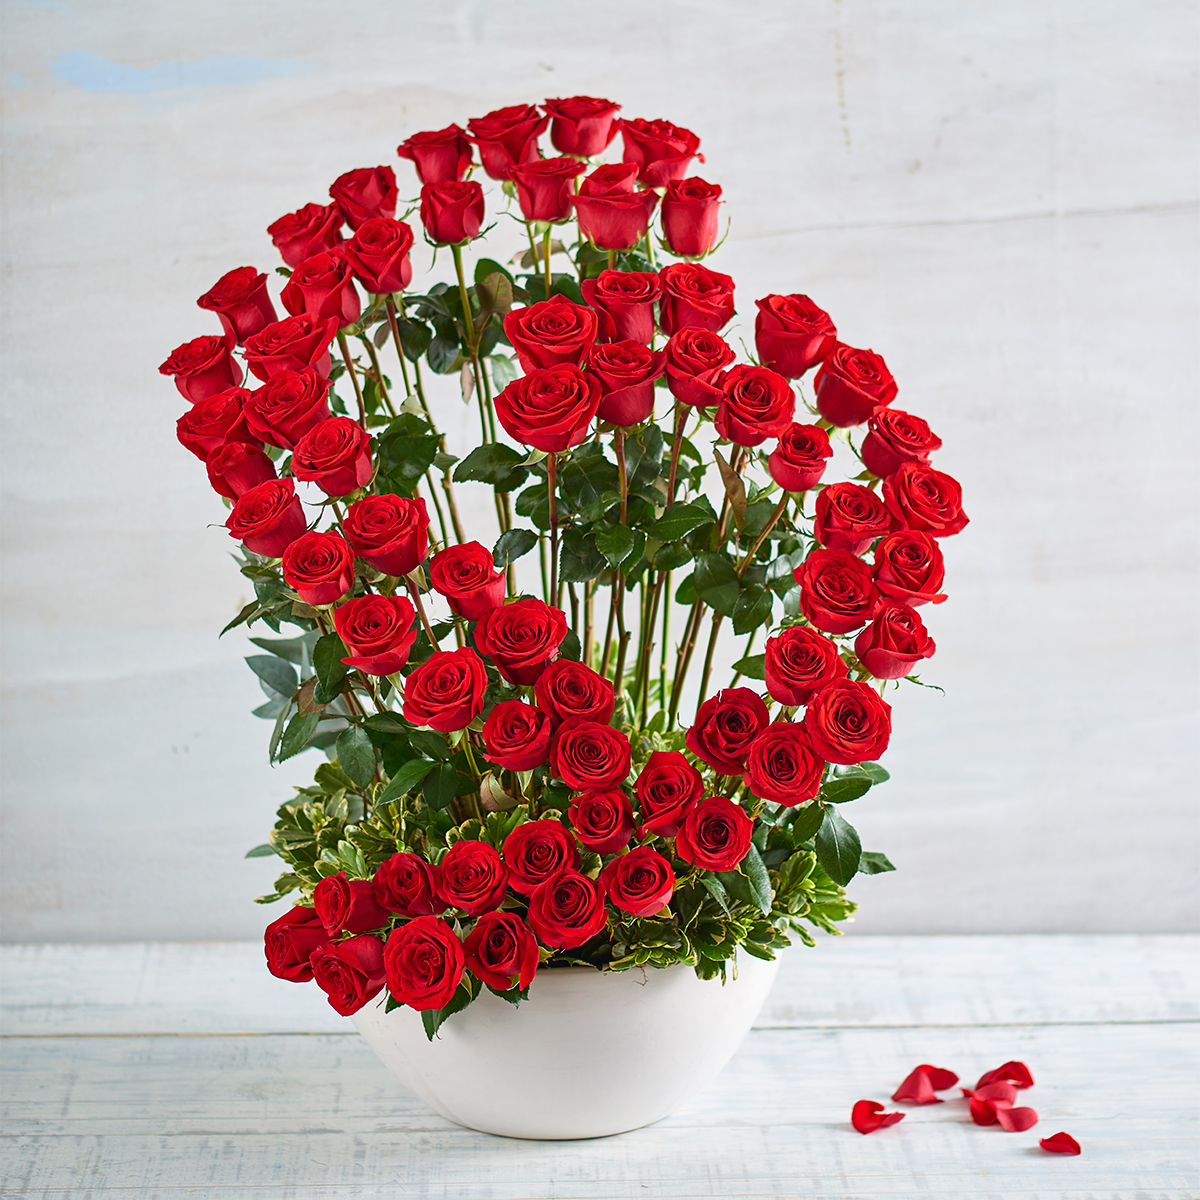 Rosas Rojas: Gran corazón de rosasModelo 488 ⋆ Arendsi